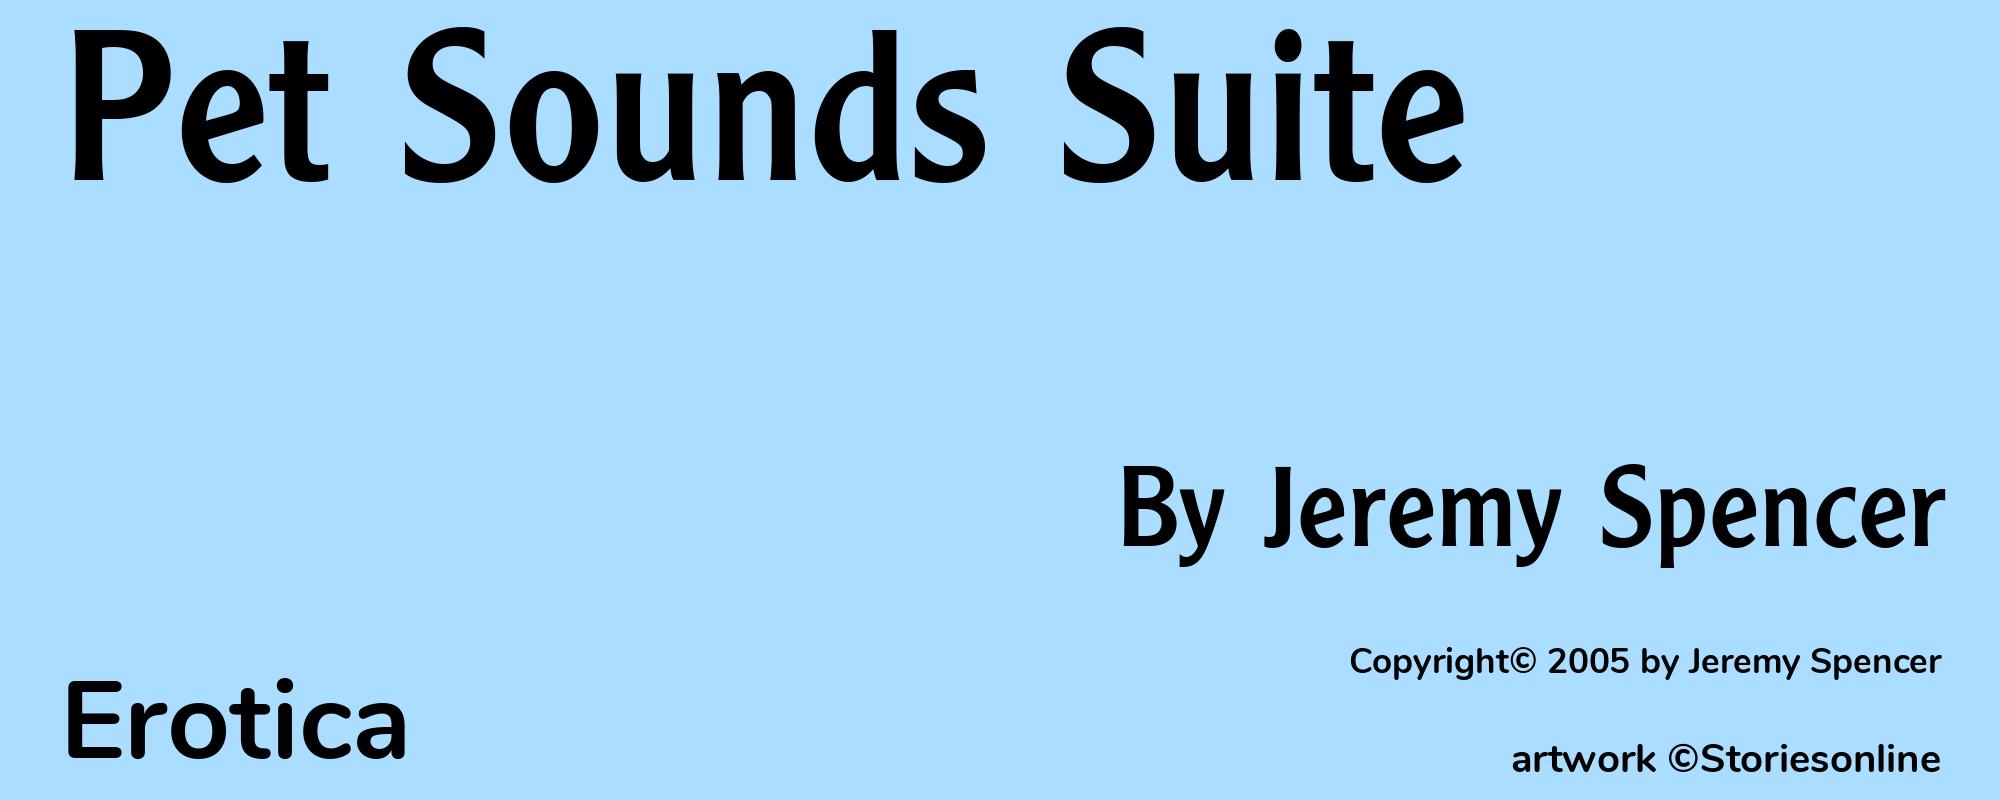 Pet Sounds Suite - Cover